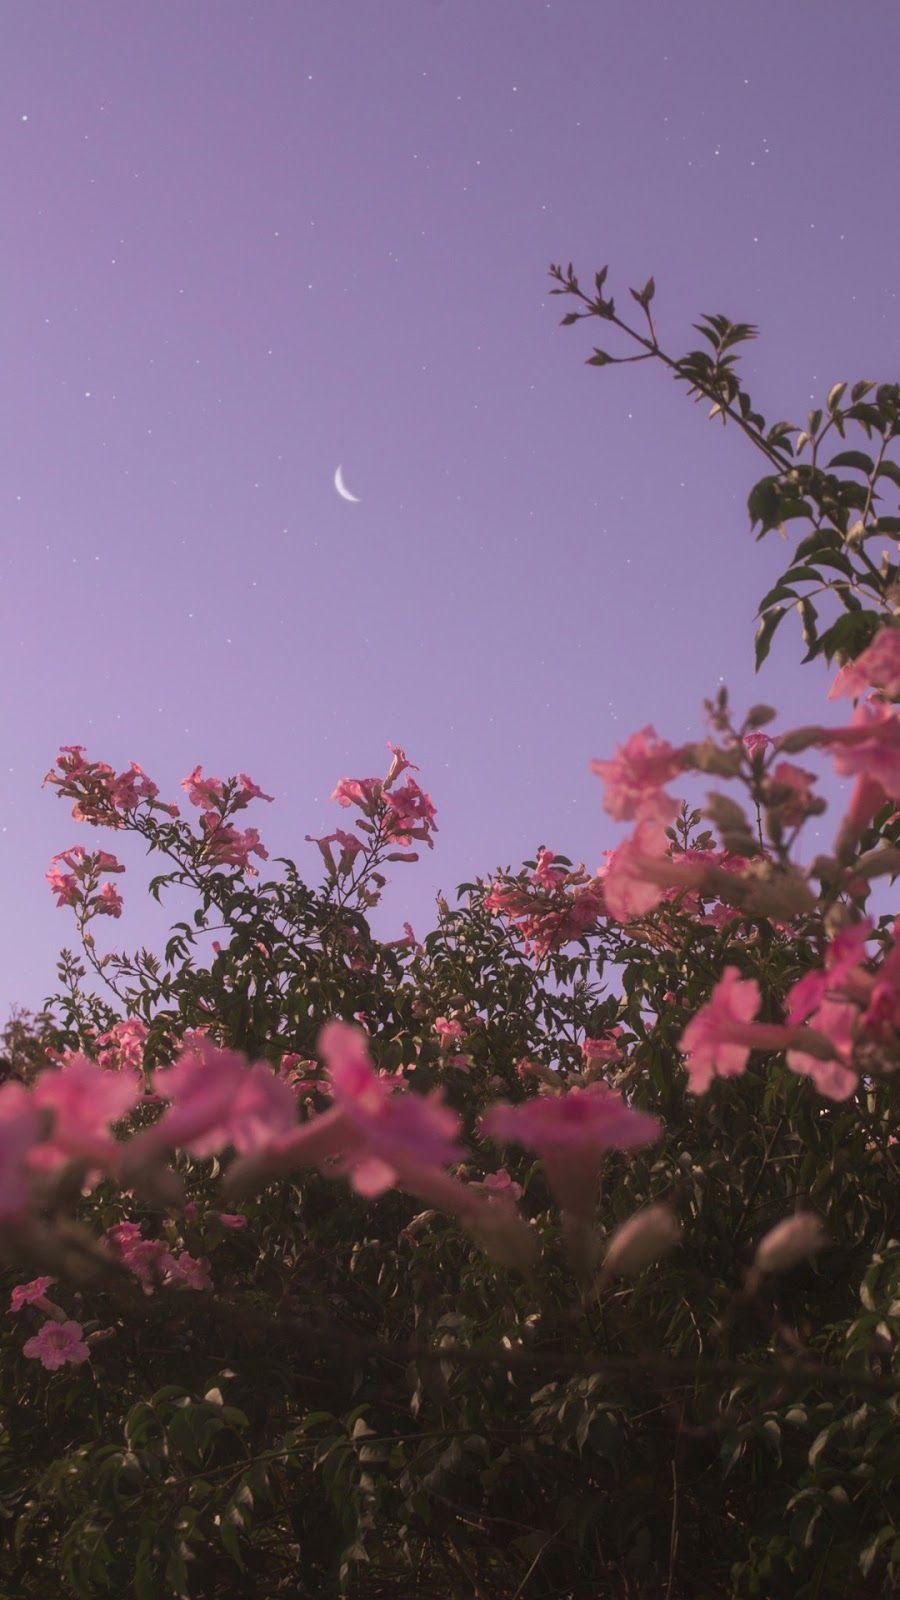 Flower under night sky. Night sky wallpaper, Aesthetic iphone wallpaper, Android wallpaper flowers